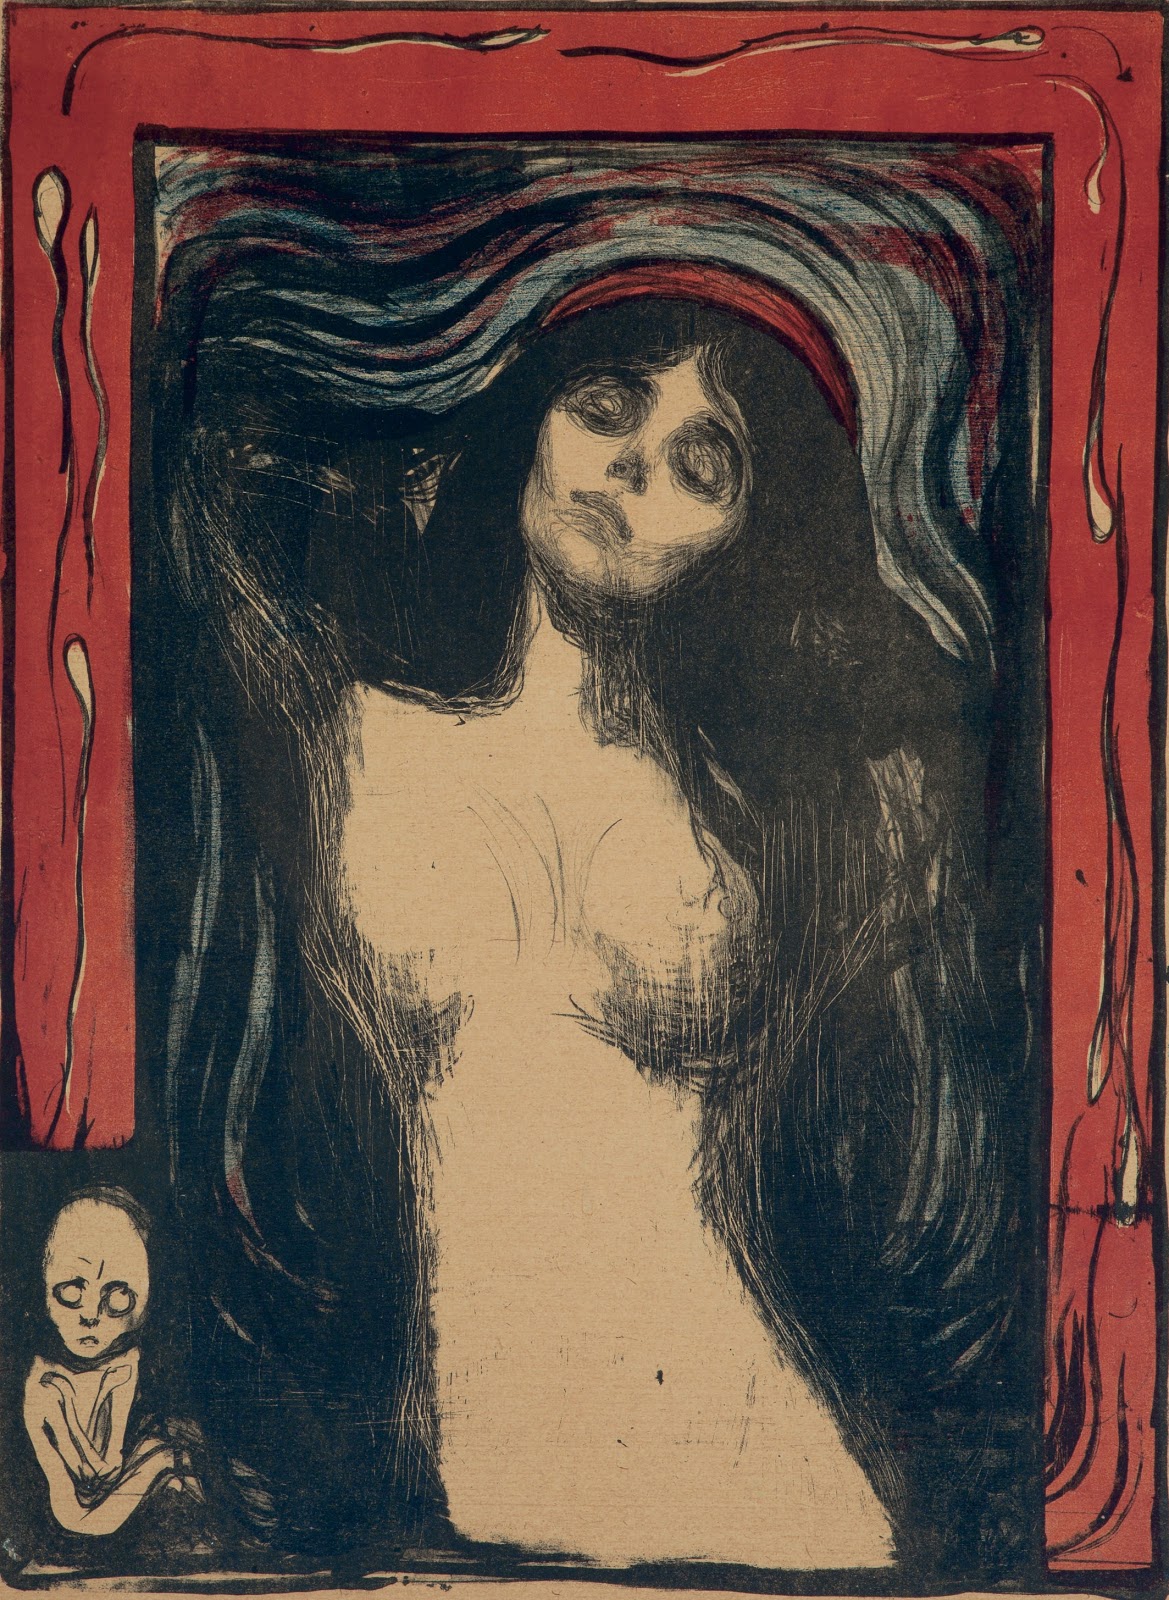 Edvard+Munch-1863-1944 (30).jpg